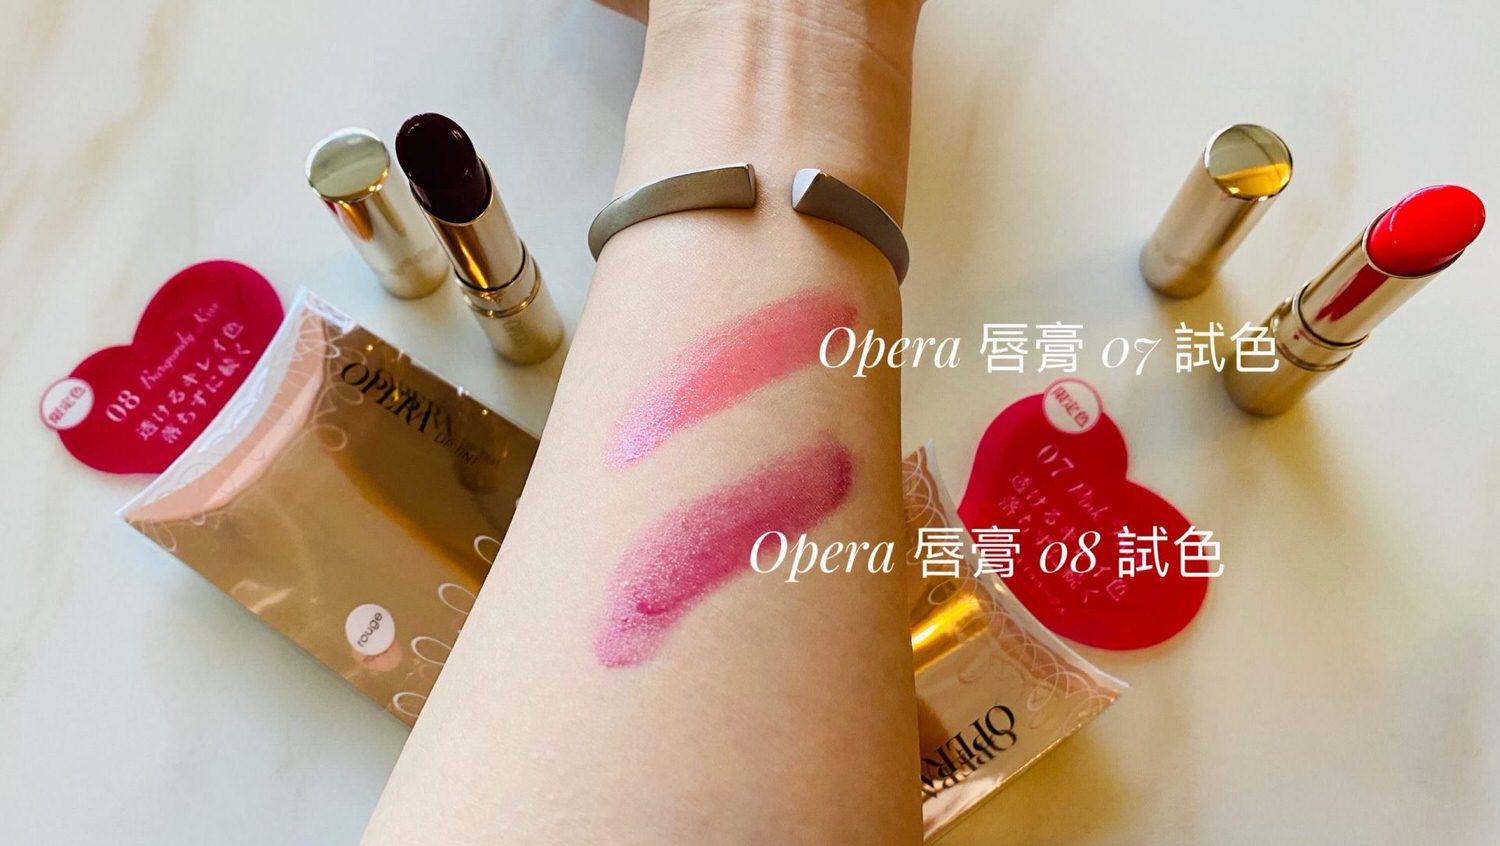 【美妝】日本 Opera Lip Tint 渲漾水色唇膏限定色 #07粉莓 #08酒紅 | 試色實擦